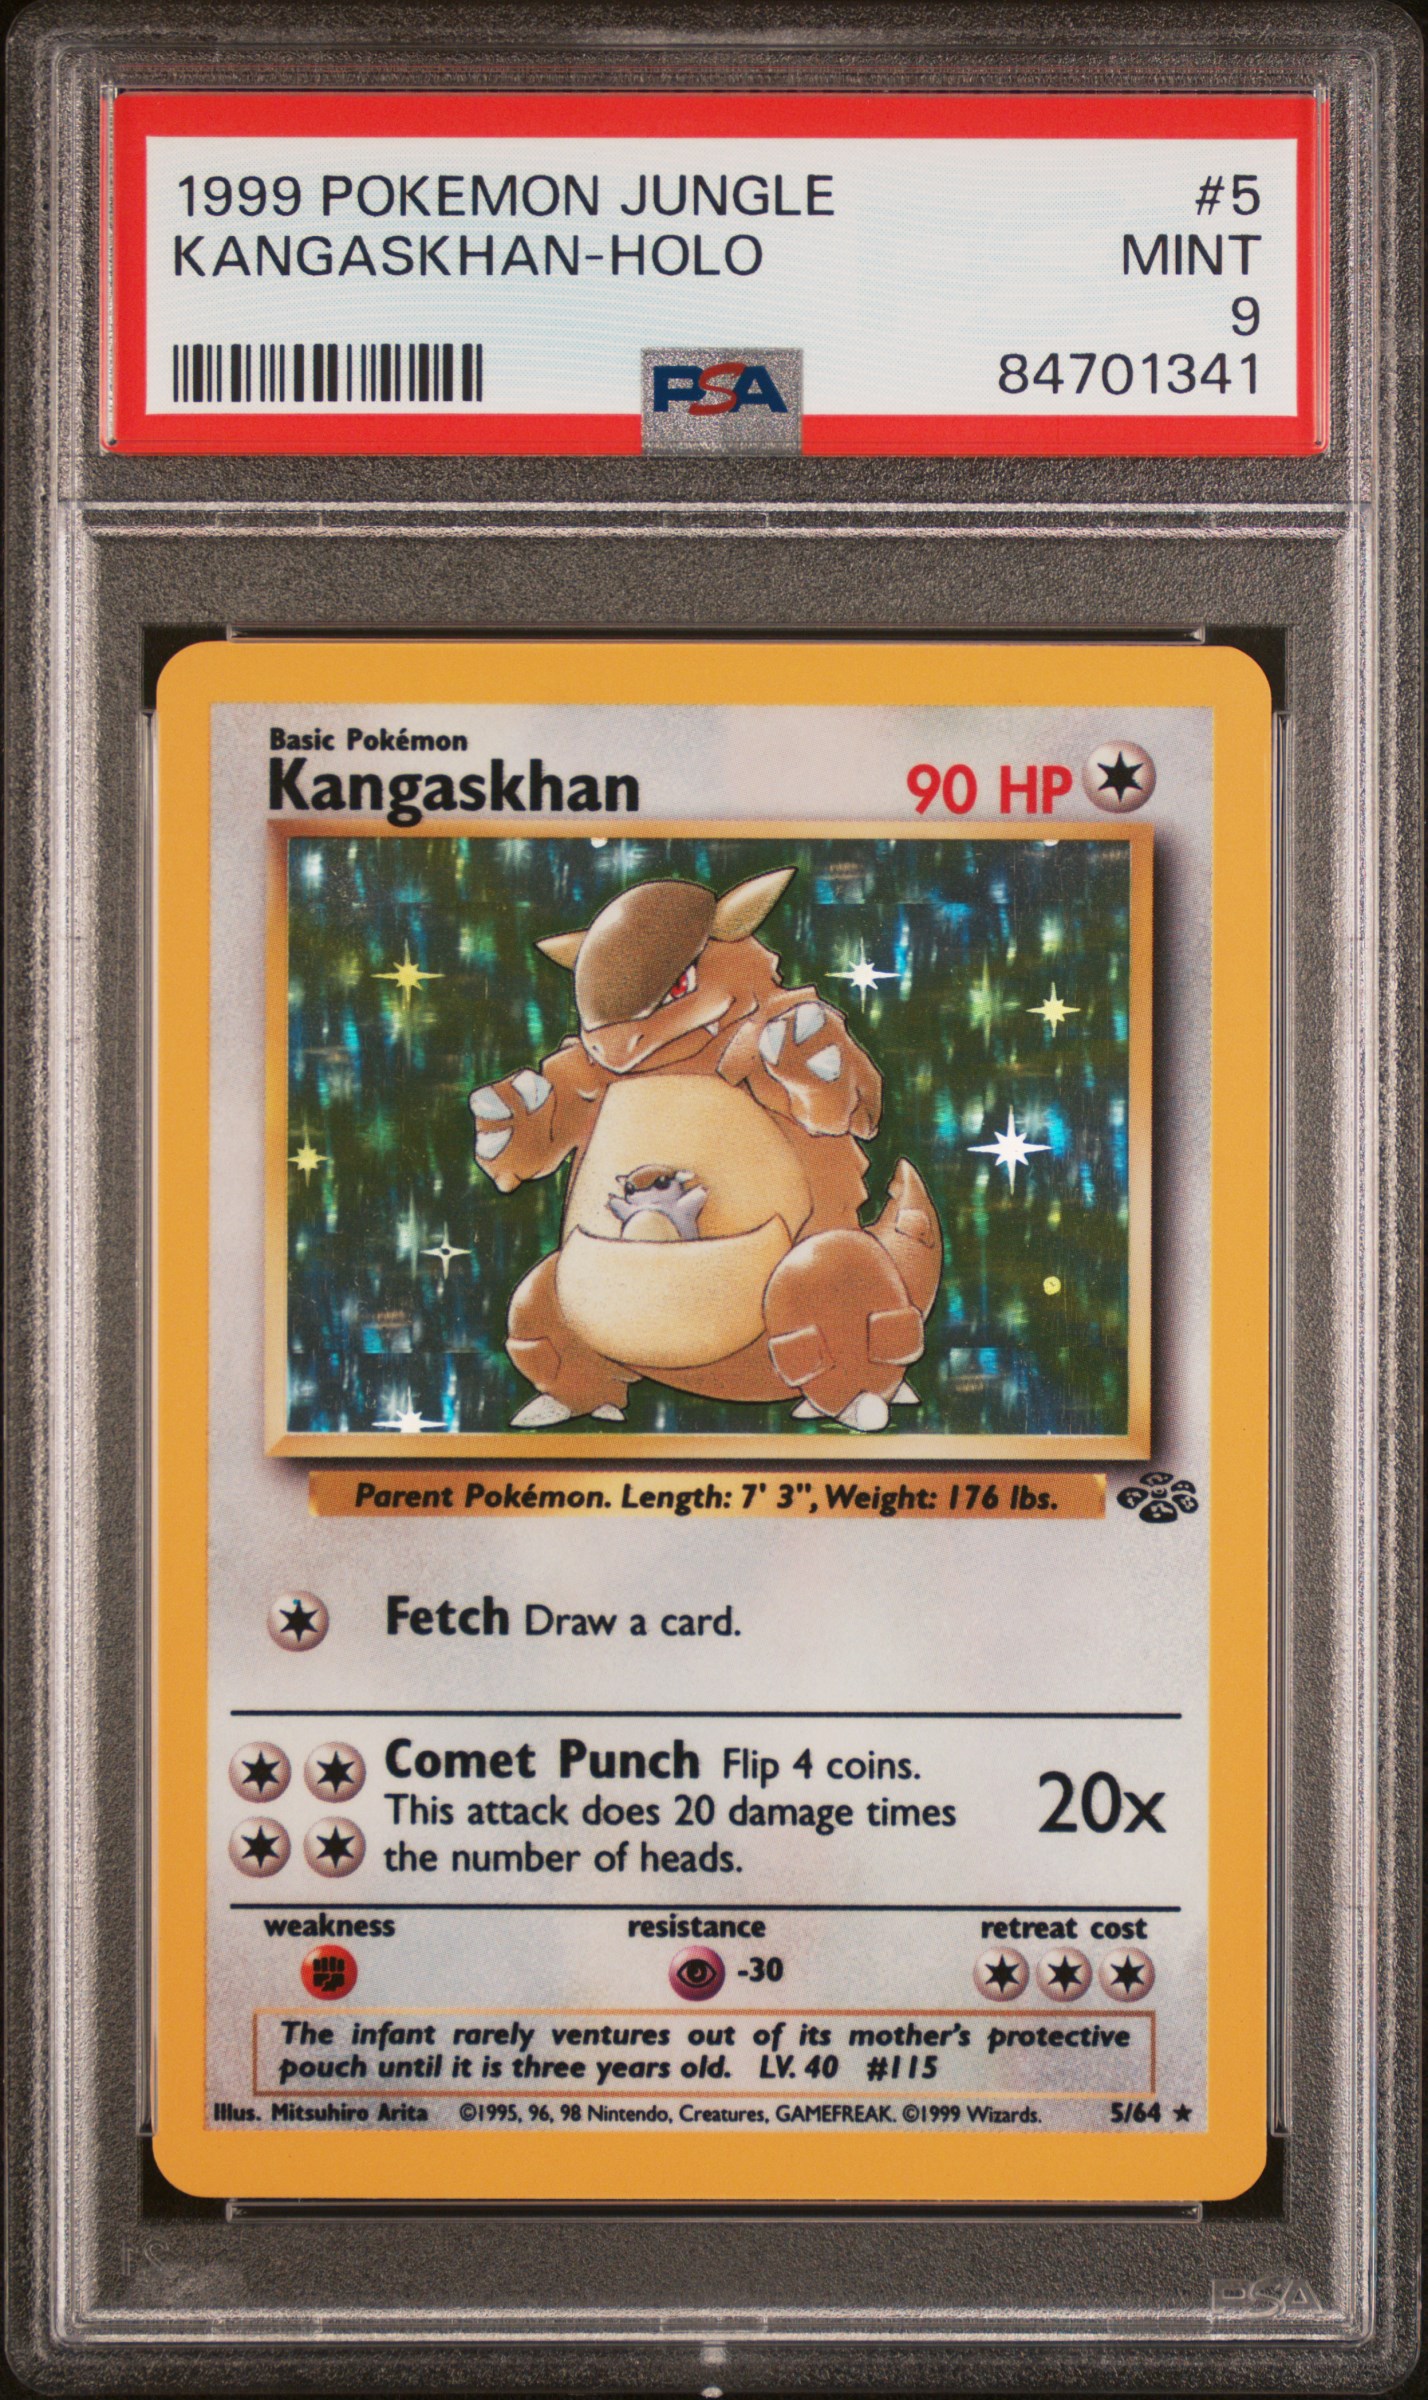 1999 Pokemon Jungle 5 Kangaskhan-Holo – PSA MINT 9